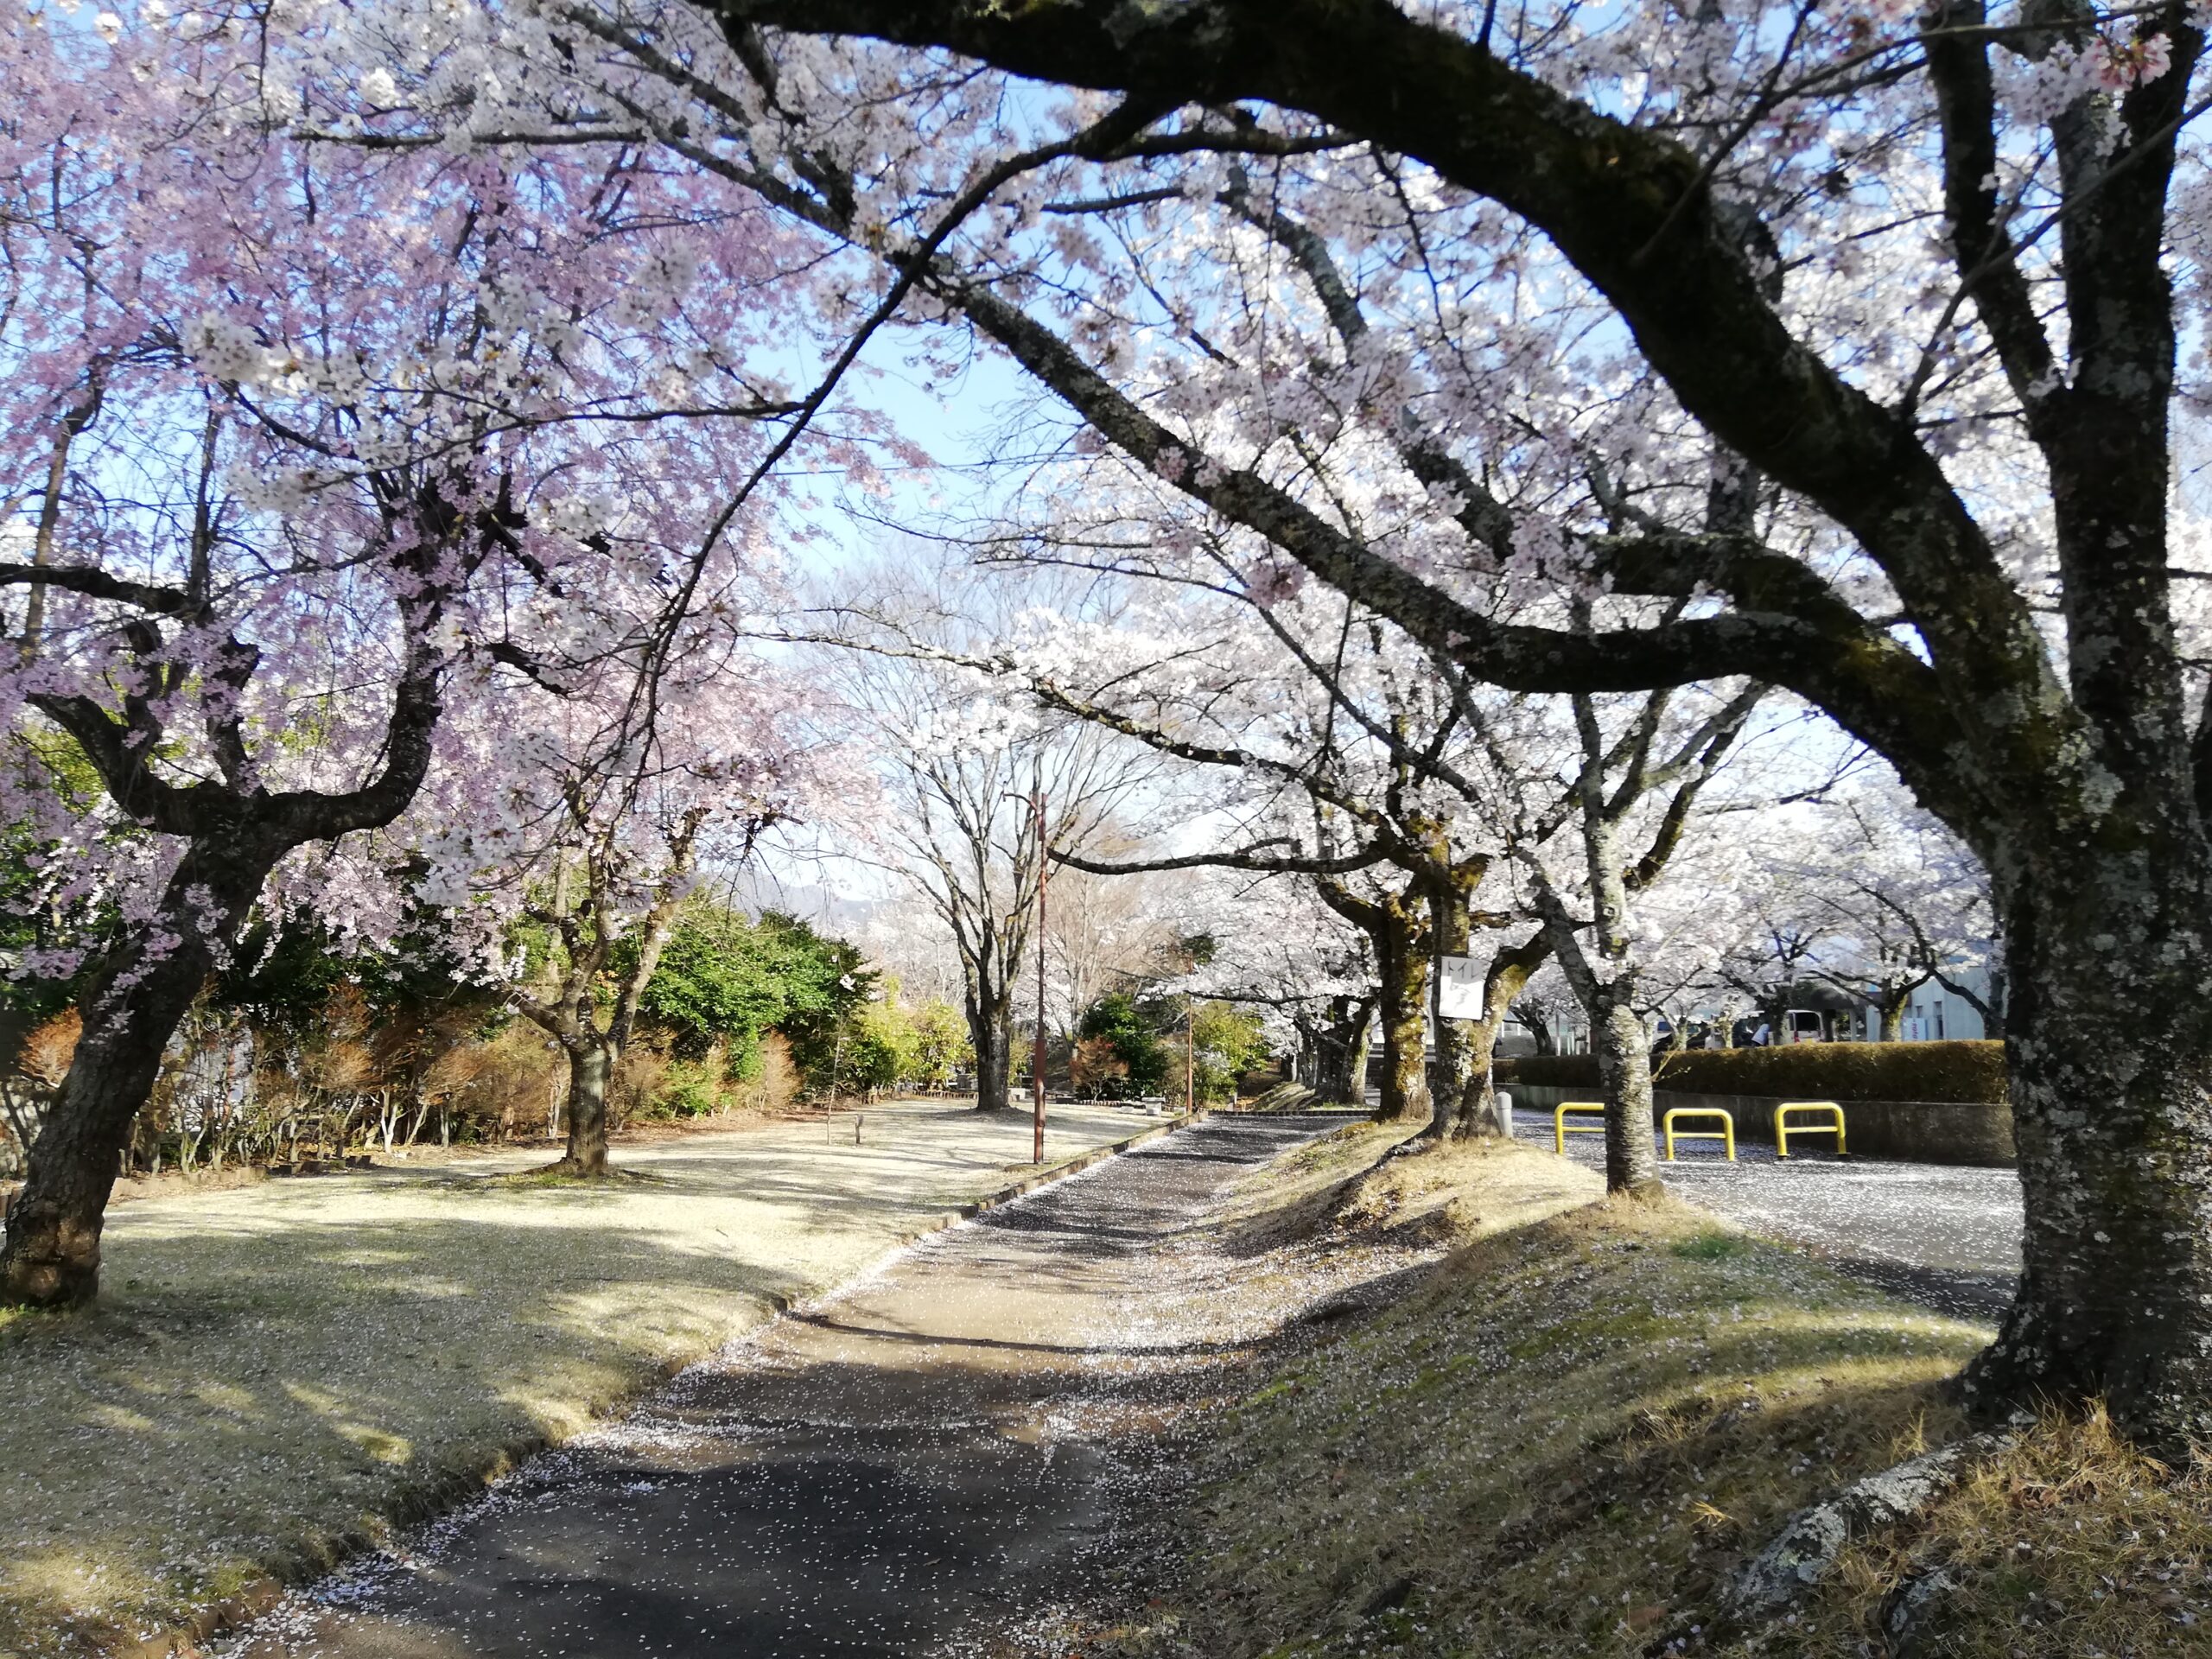 殿原スポーツ公園の桜を紹介します。